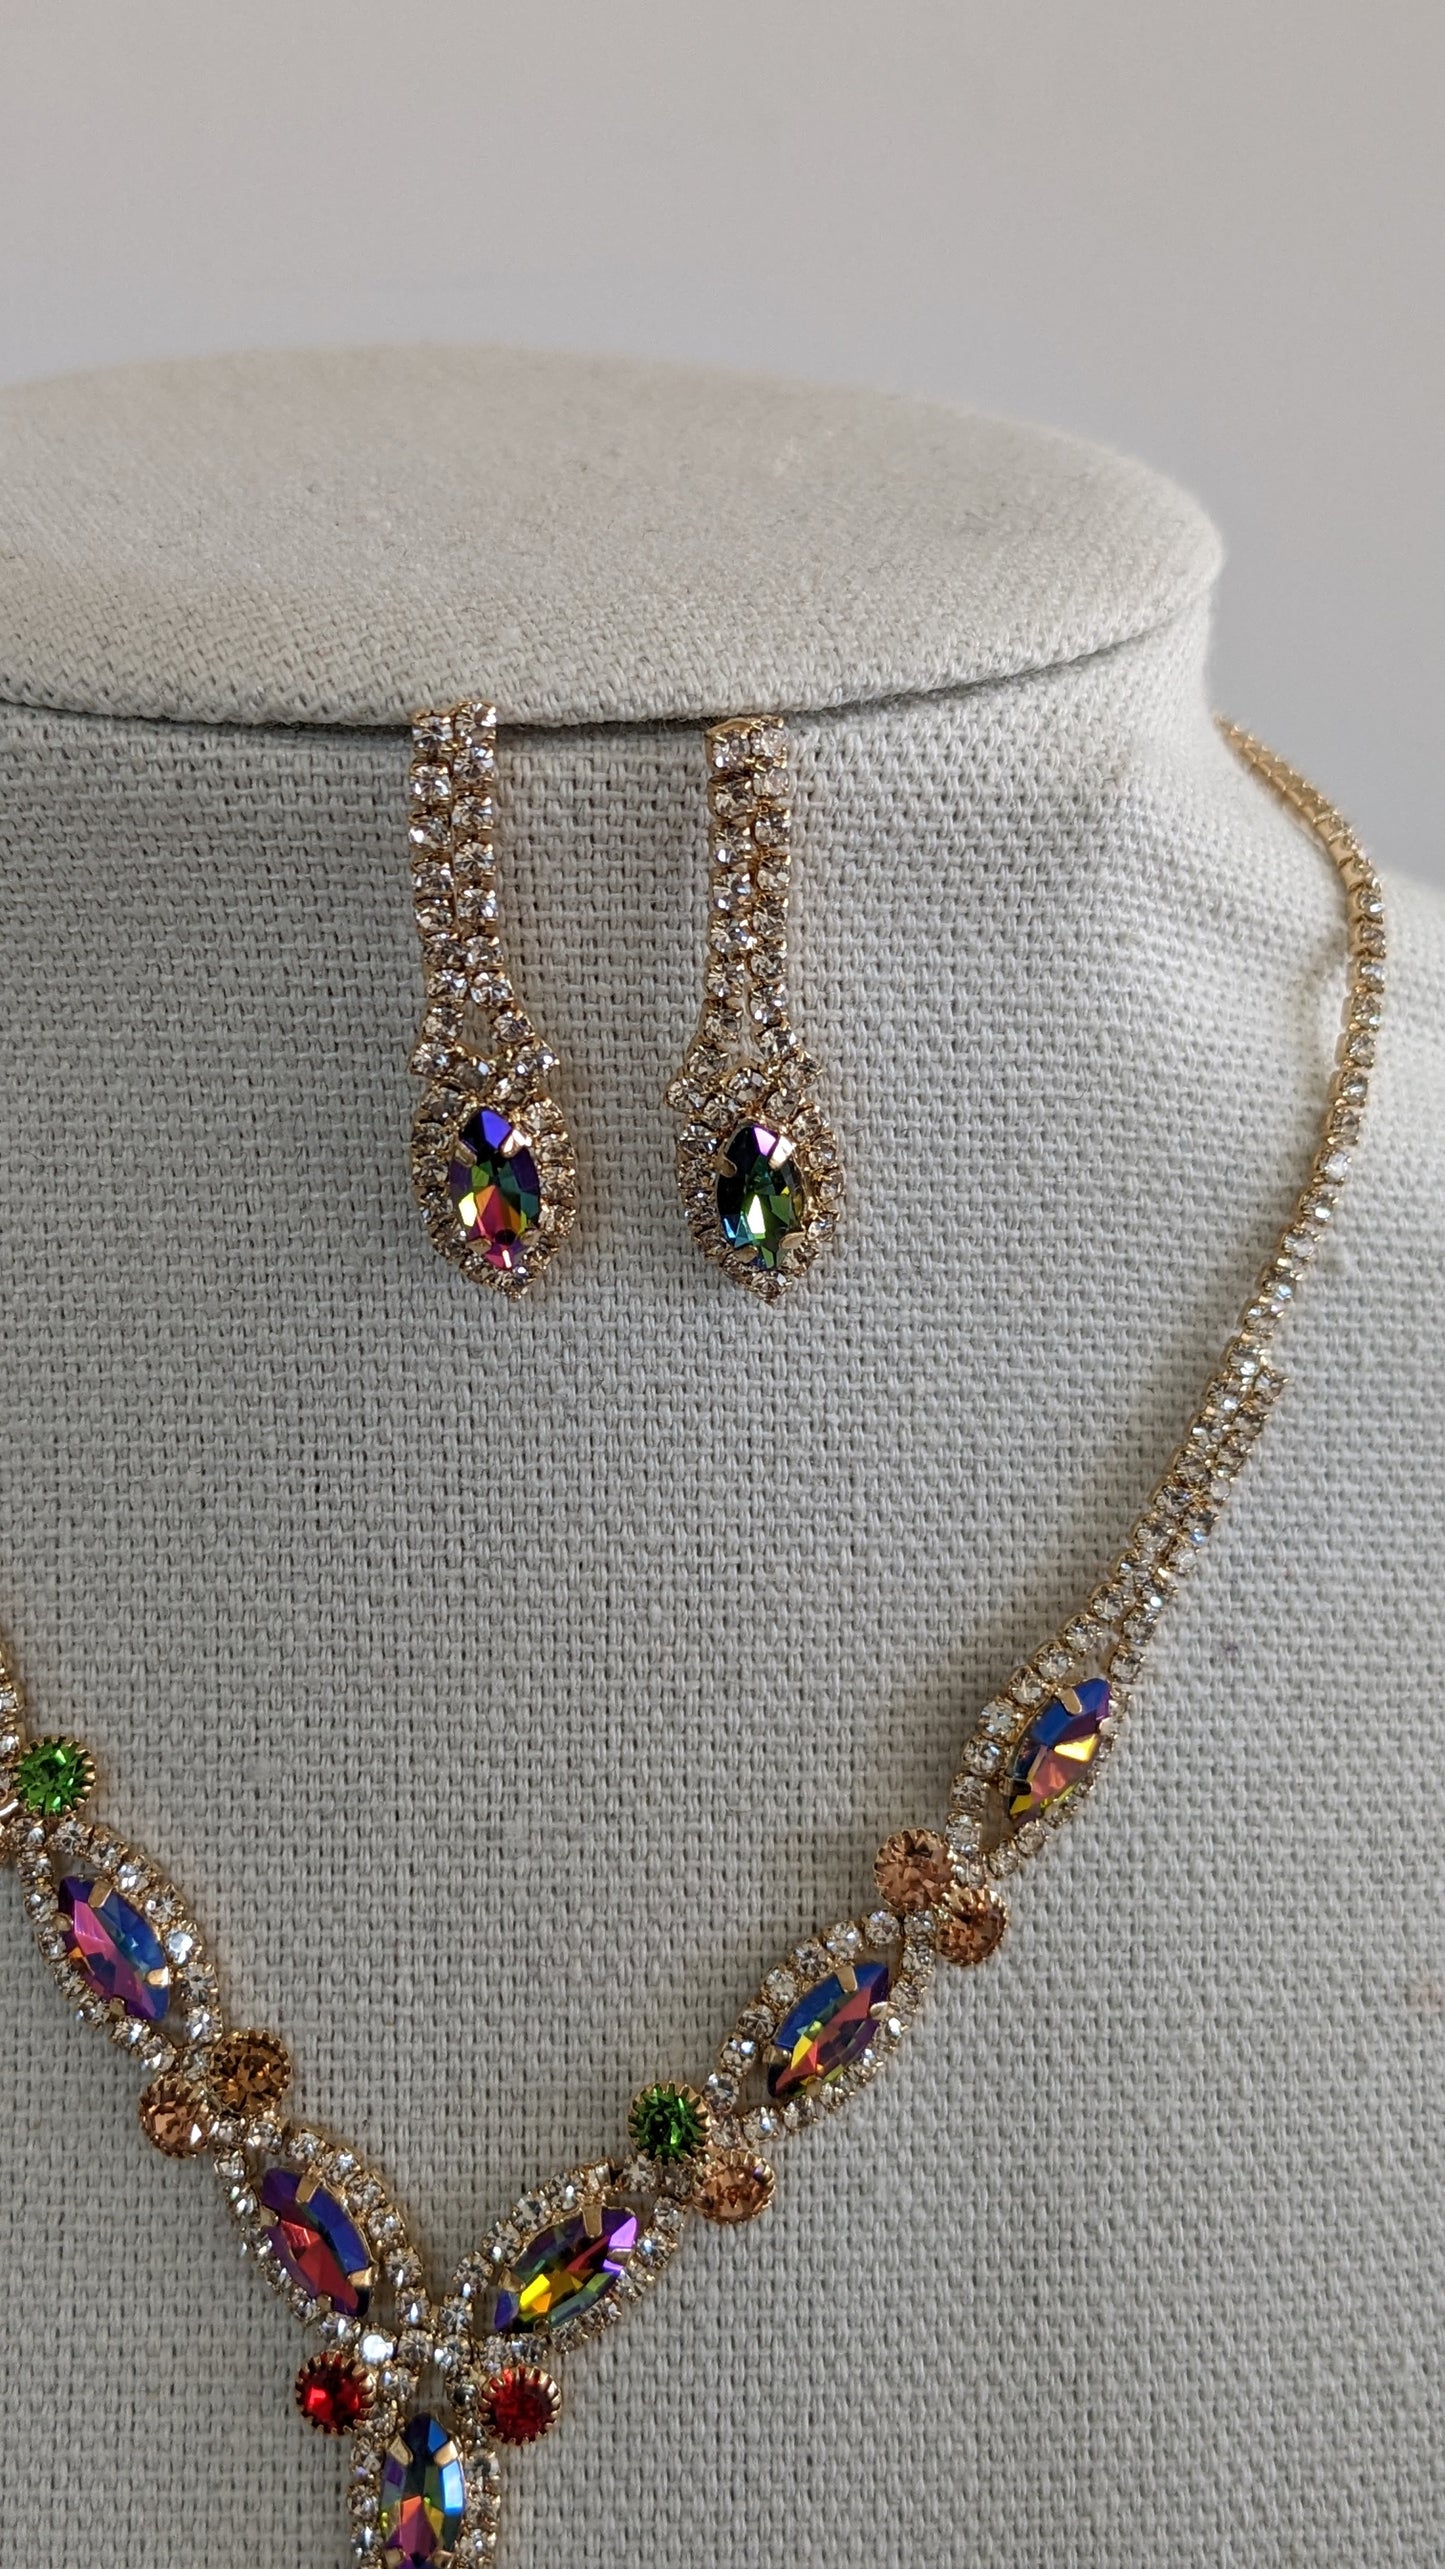 Marquise Rhinestone Crystal Cluster V-Shape Bib Necklace Set: Rainbow